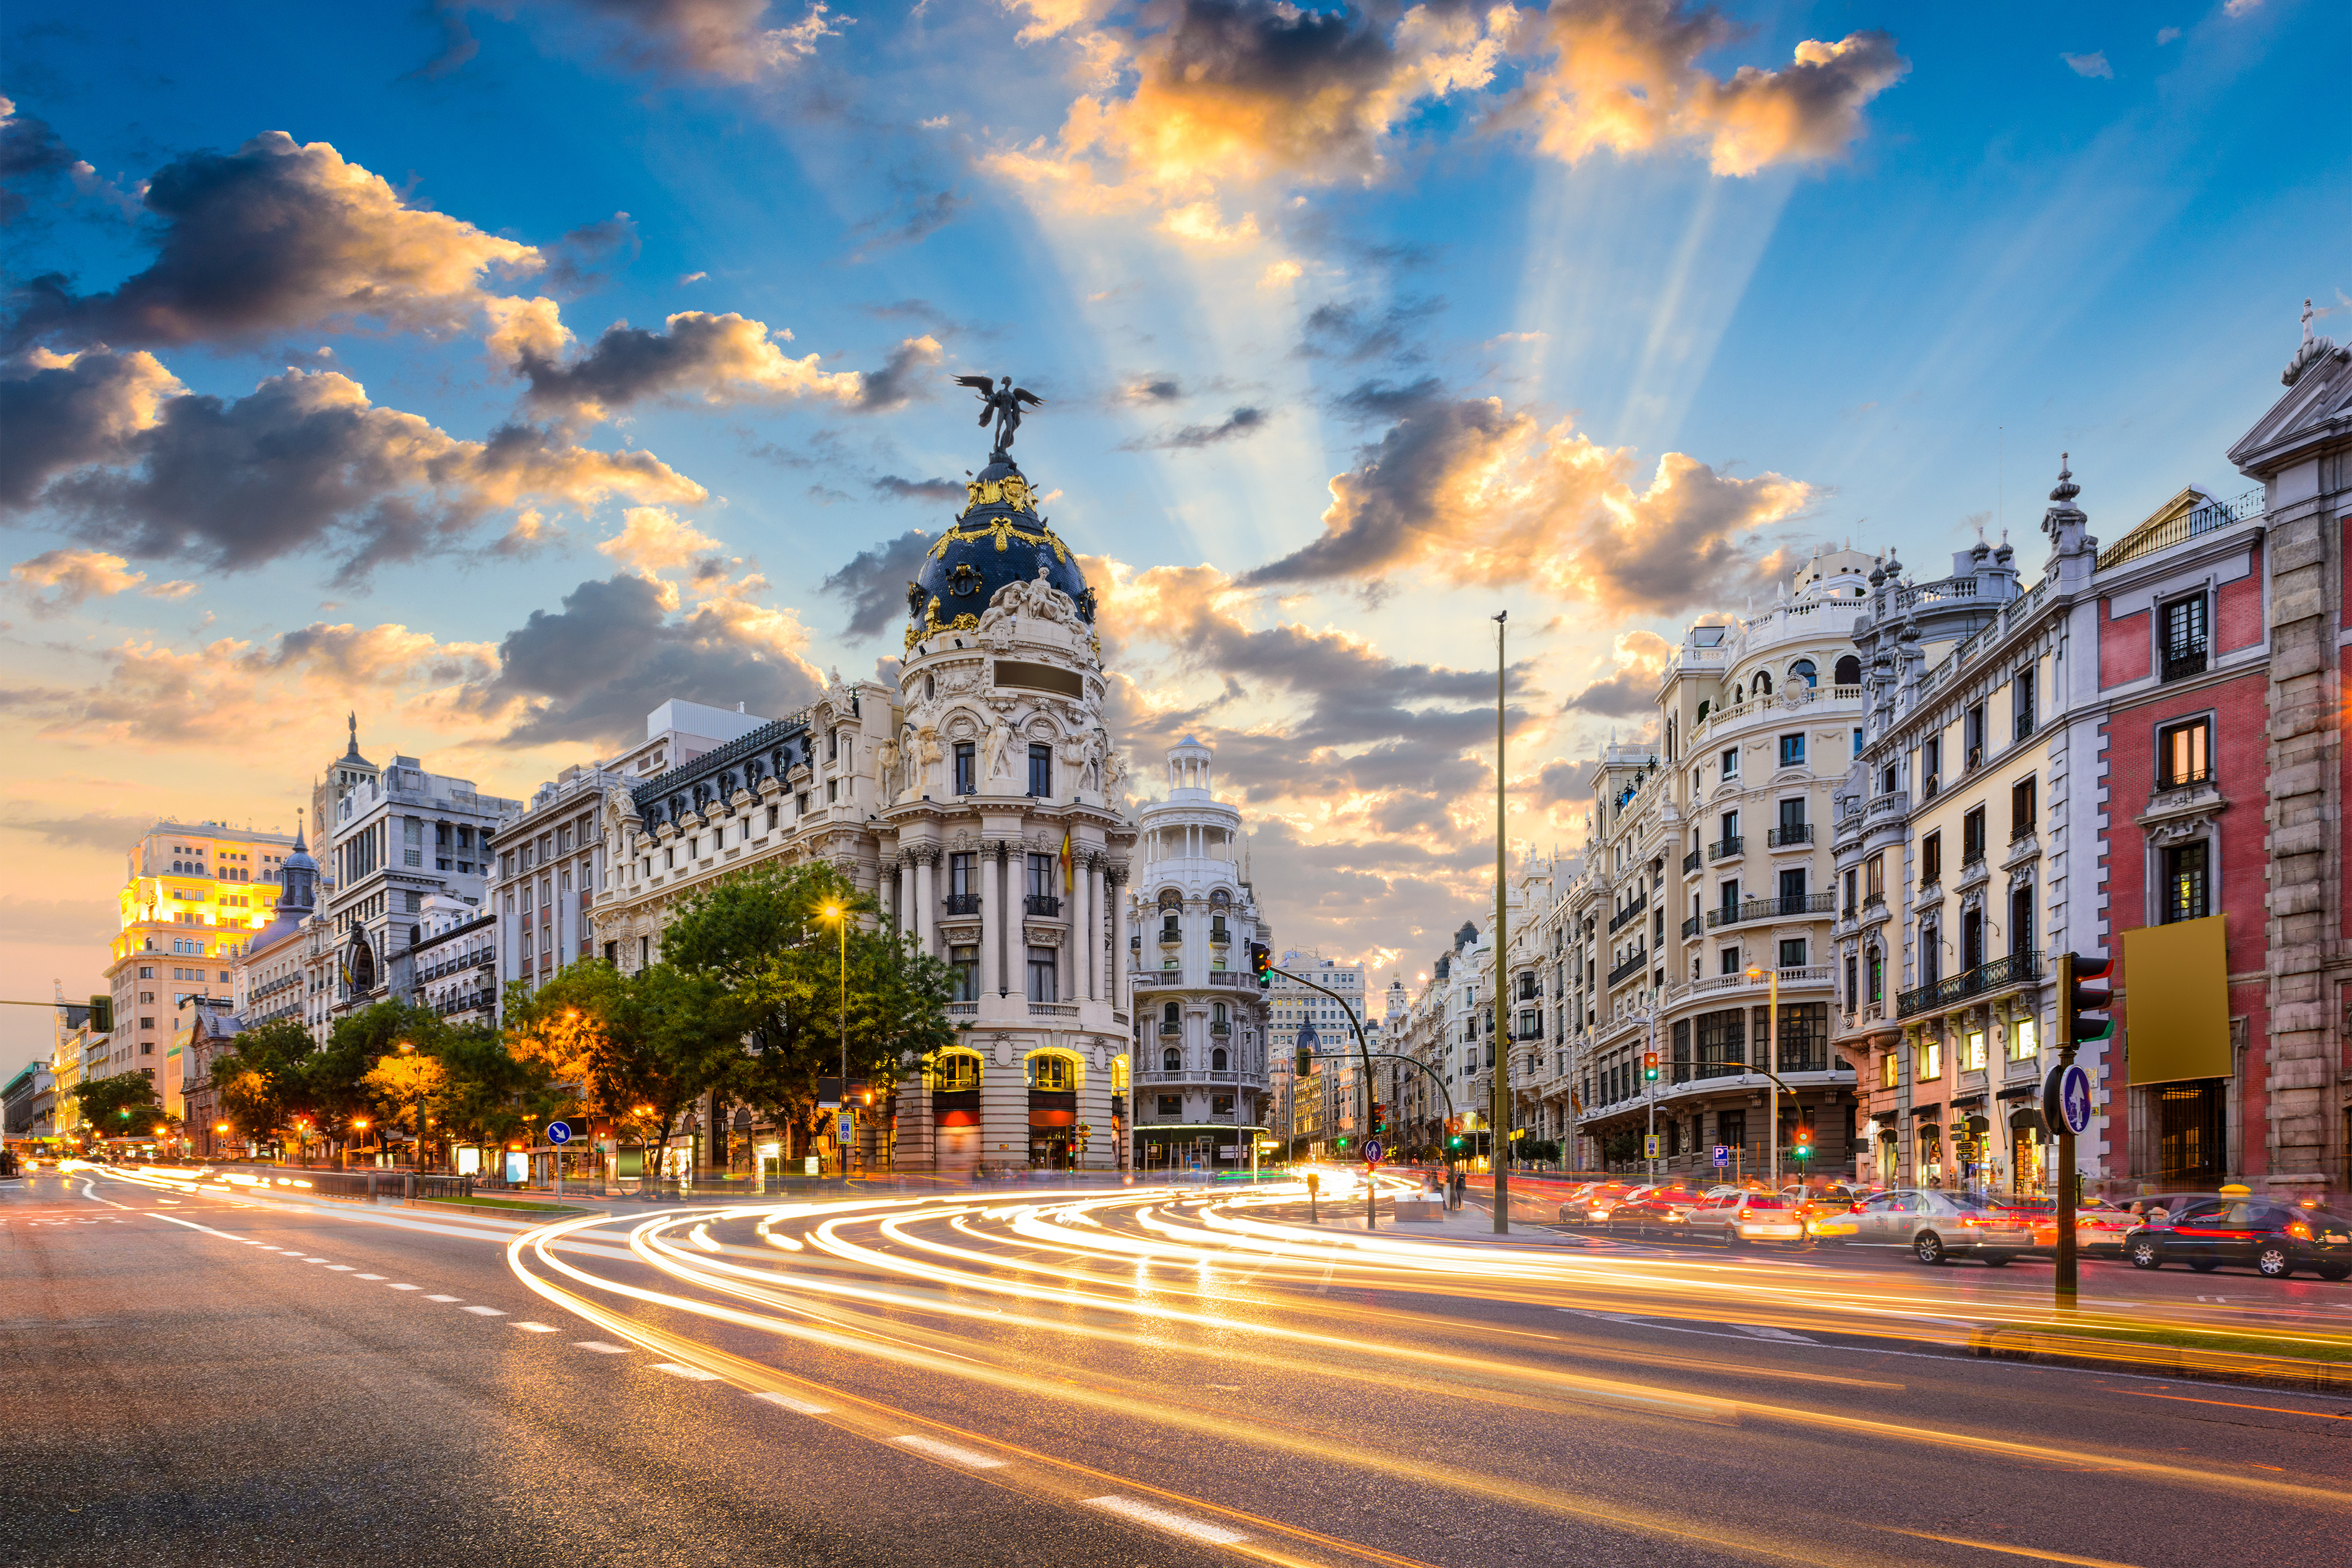 Панорама на Испанский город как символ переезда в Испанию на ПМЖ